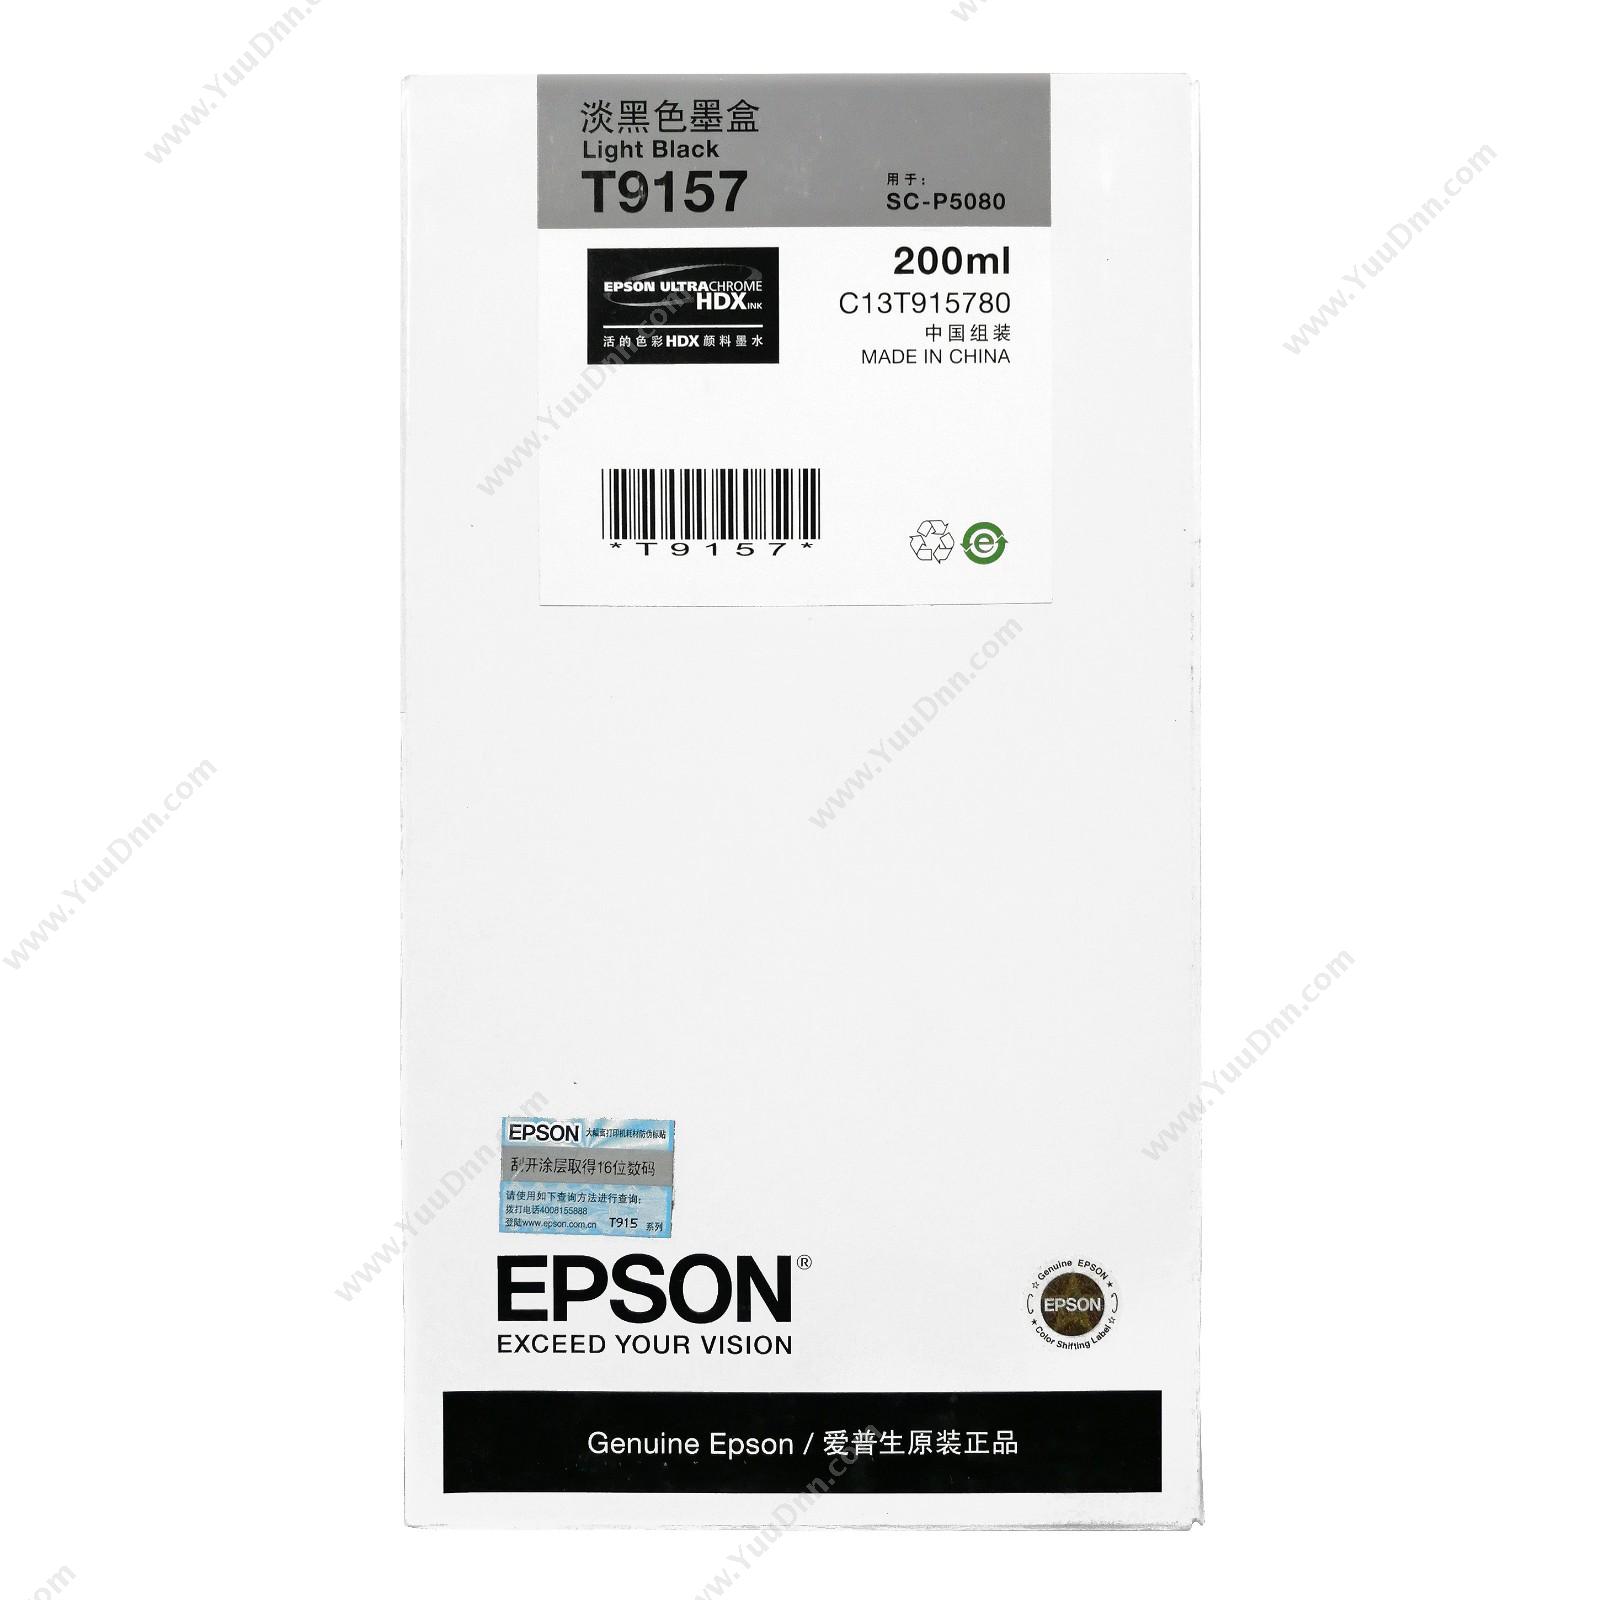 爱普生 Epson P5080淡黑墨200ml(C13T915780) 墨盒